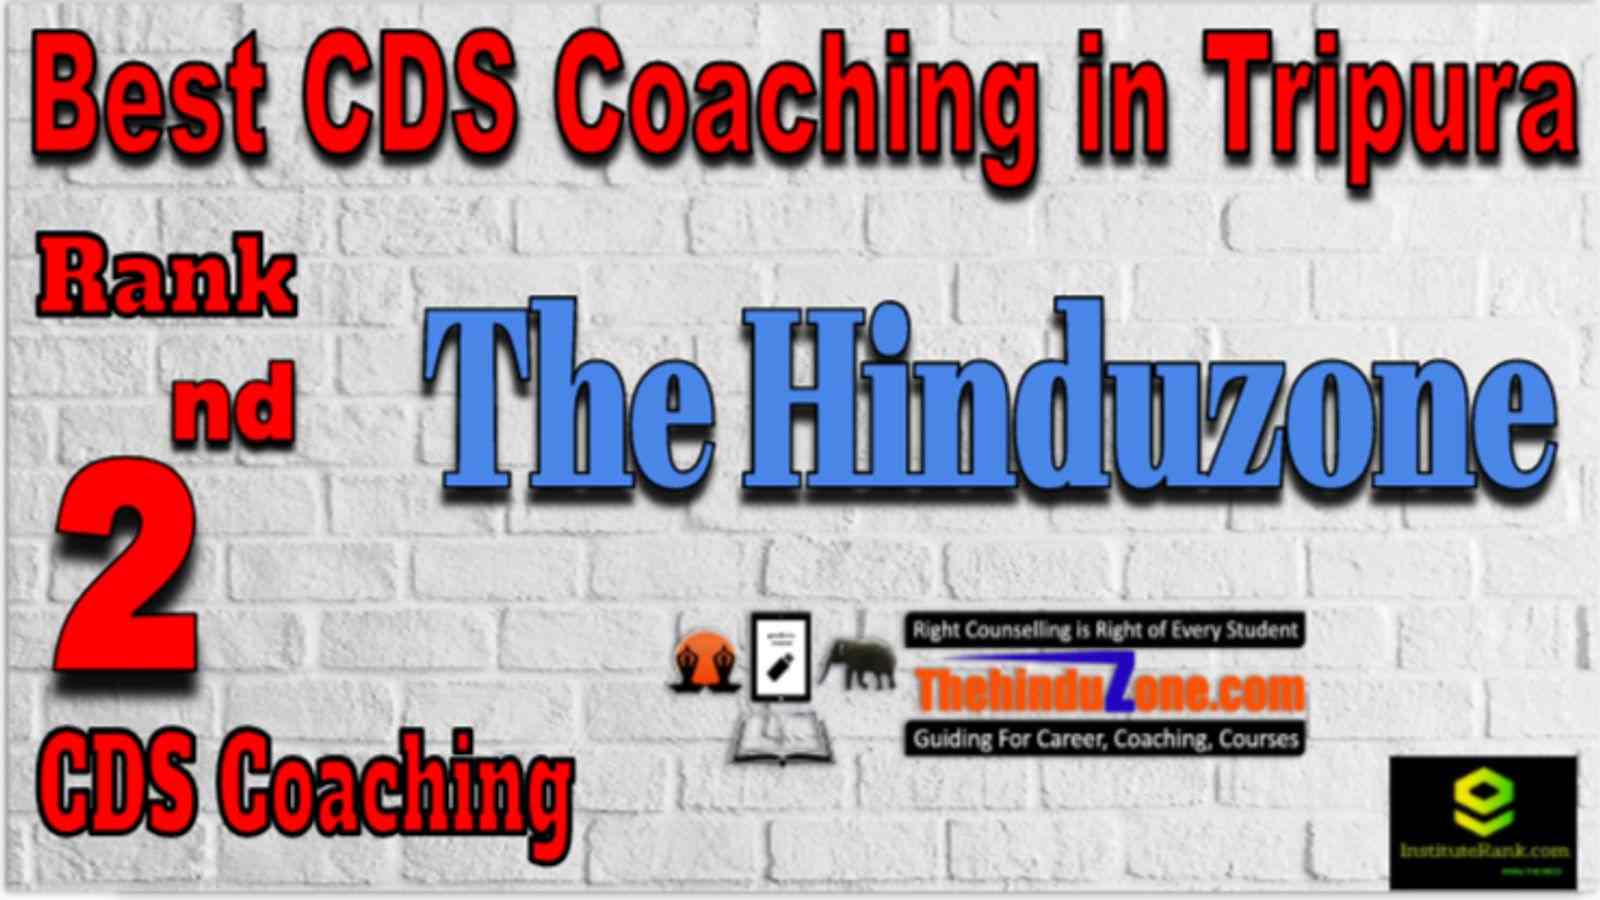 Rank 2 Best CDS Coaching in Tripura